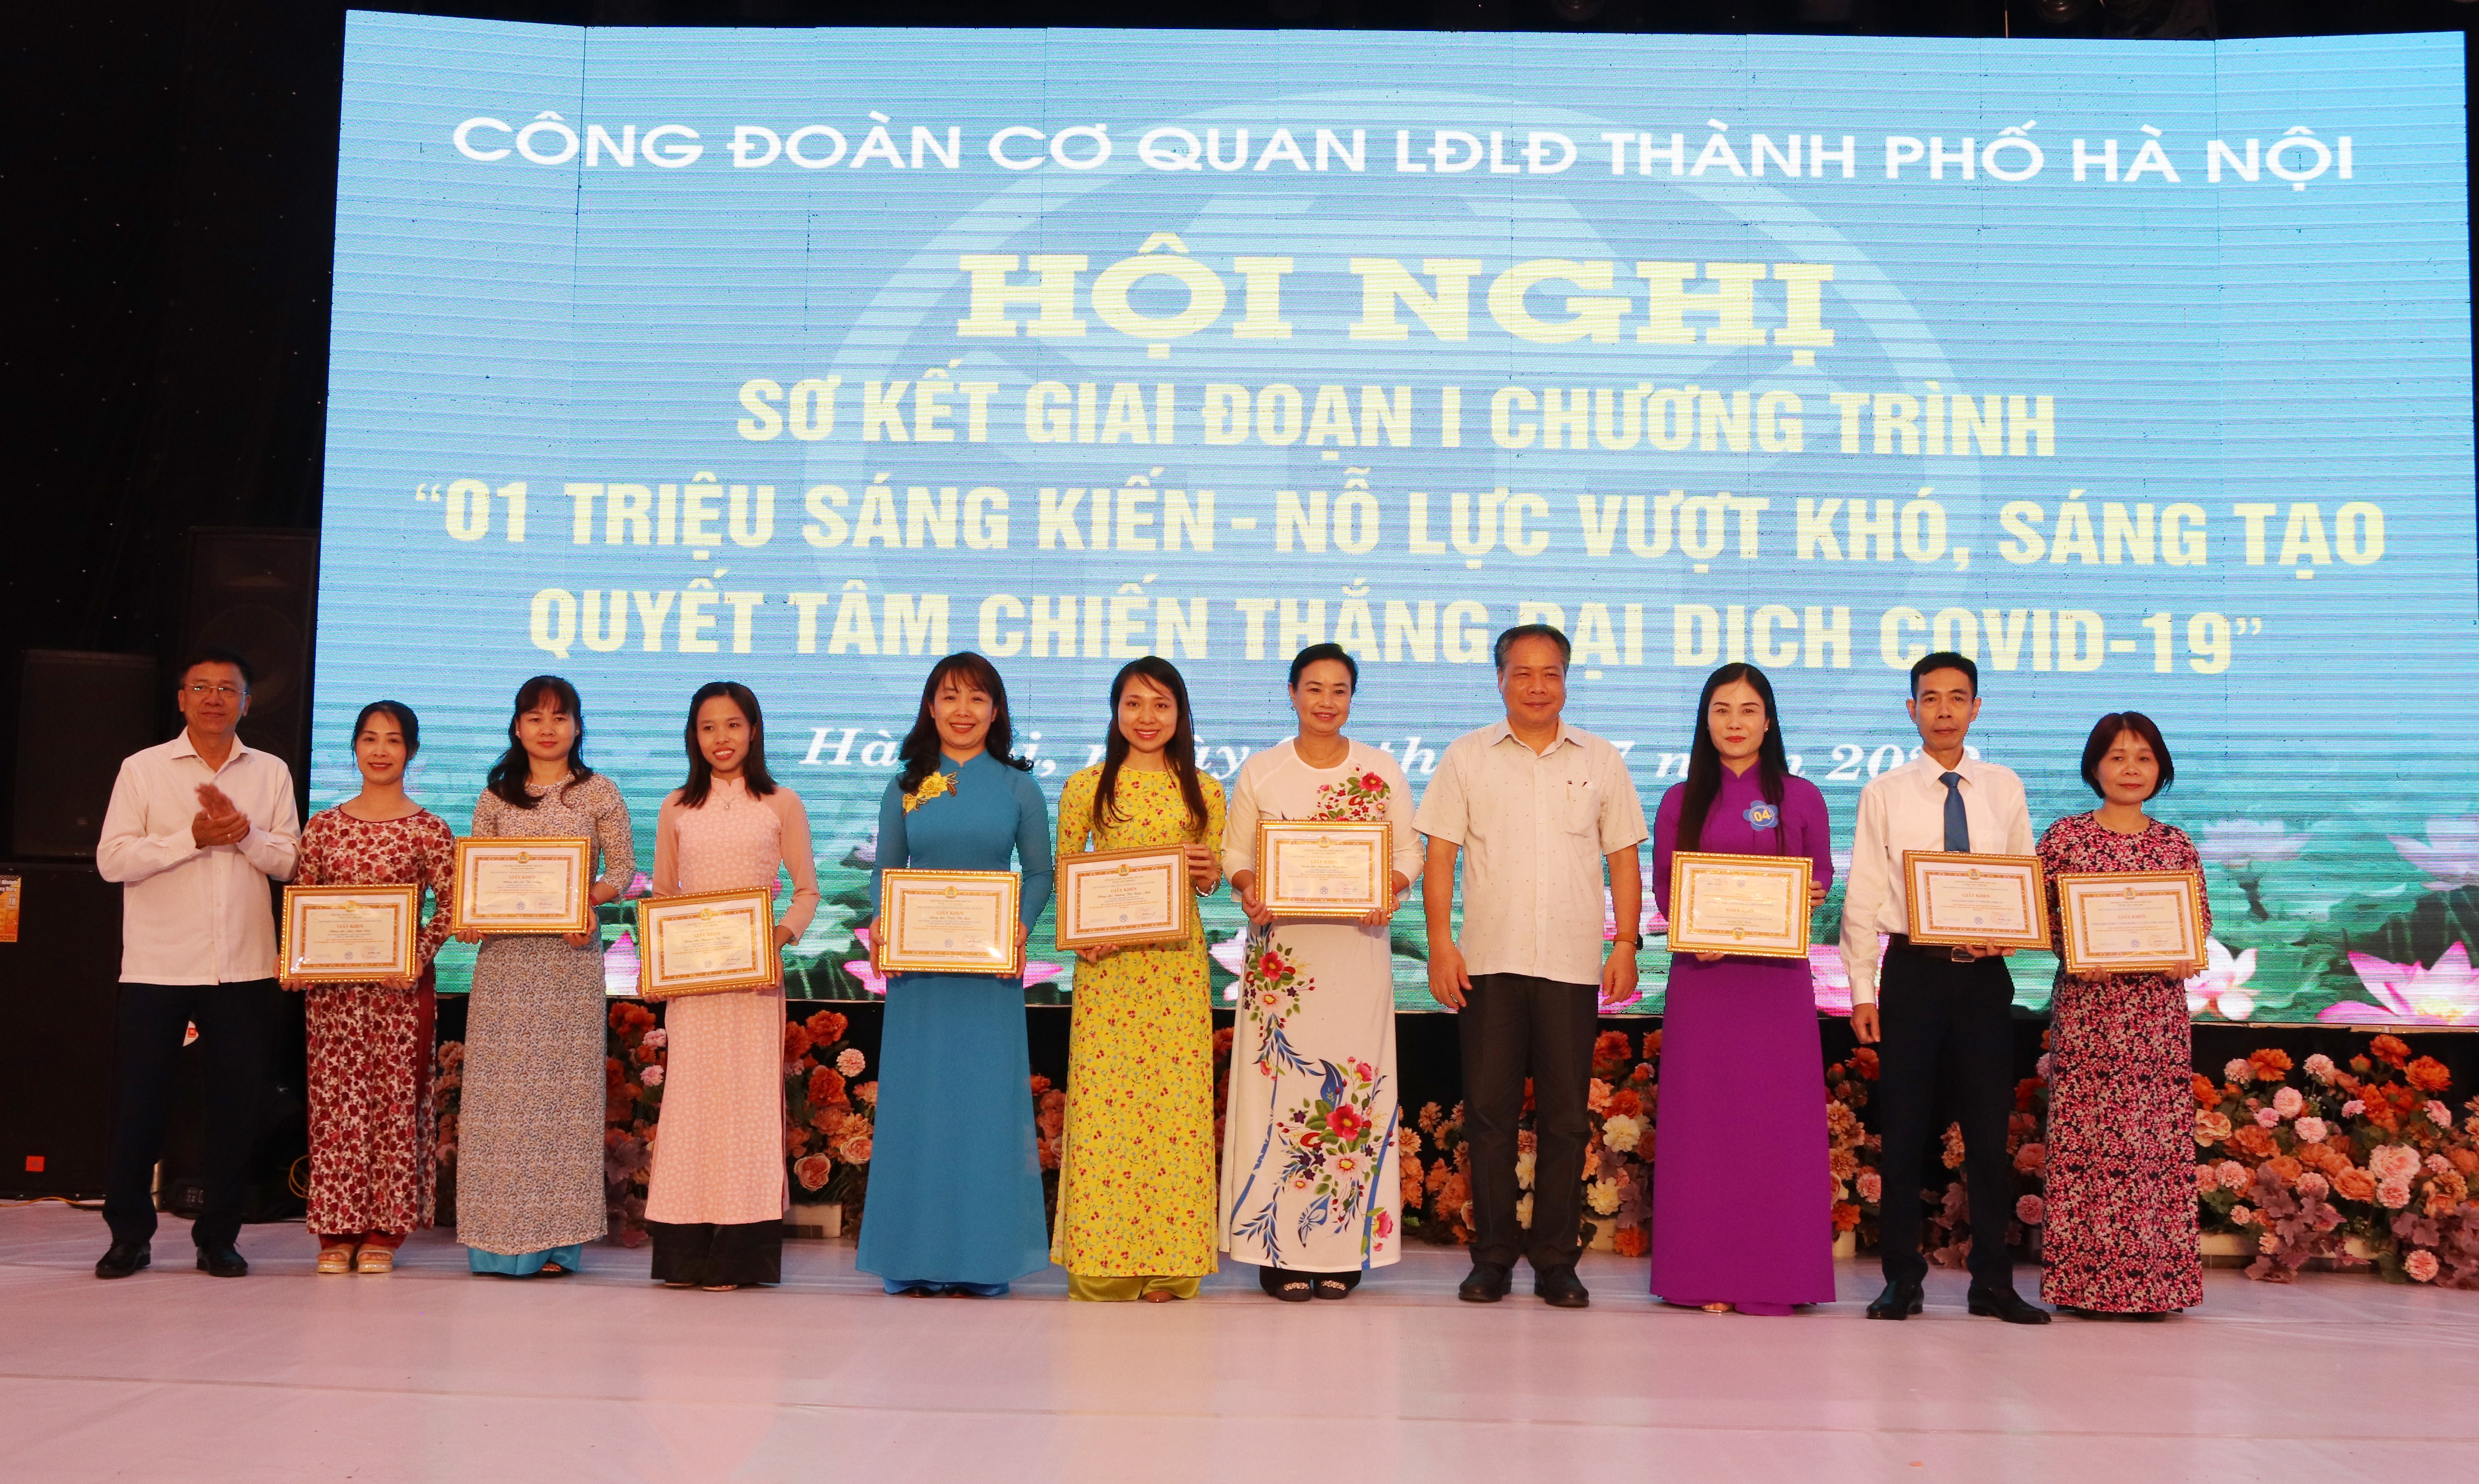 Công đoàn Cơ quan LĐLĐ thành phố Hà Nội tích cực hưởng ứng Chương trình “1 triệu sáng kiến”